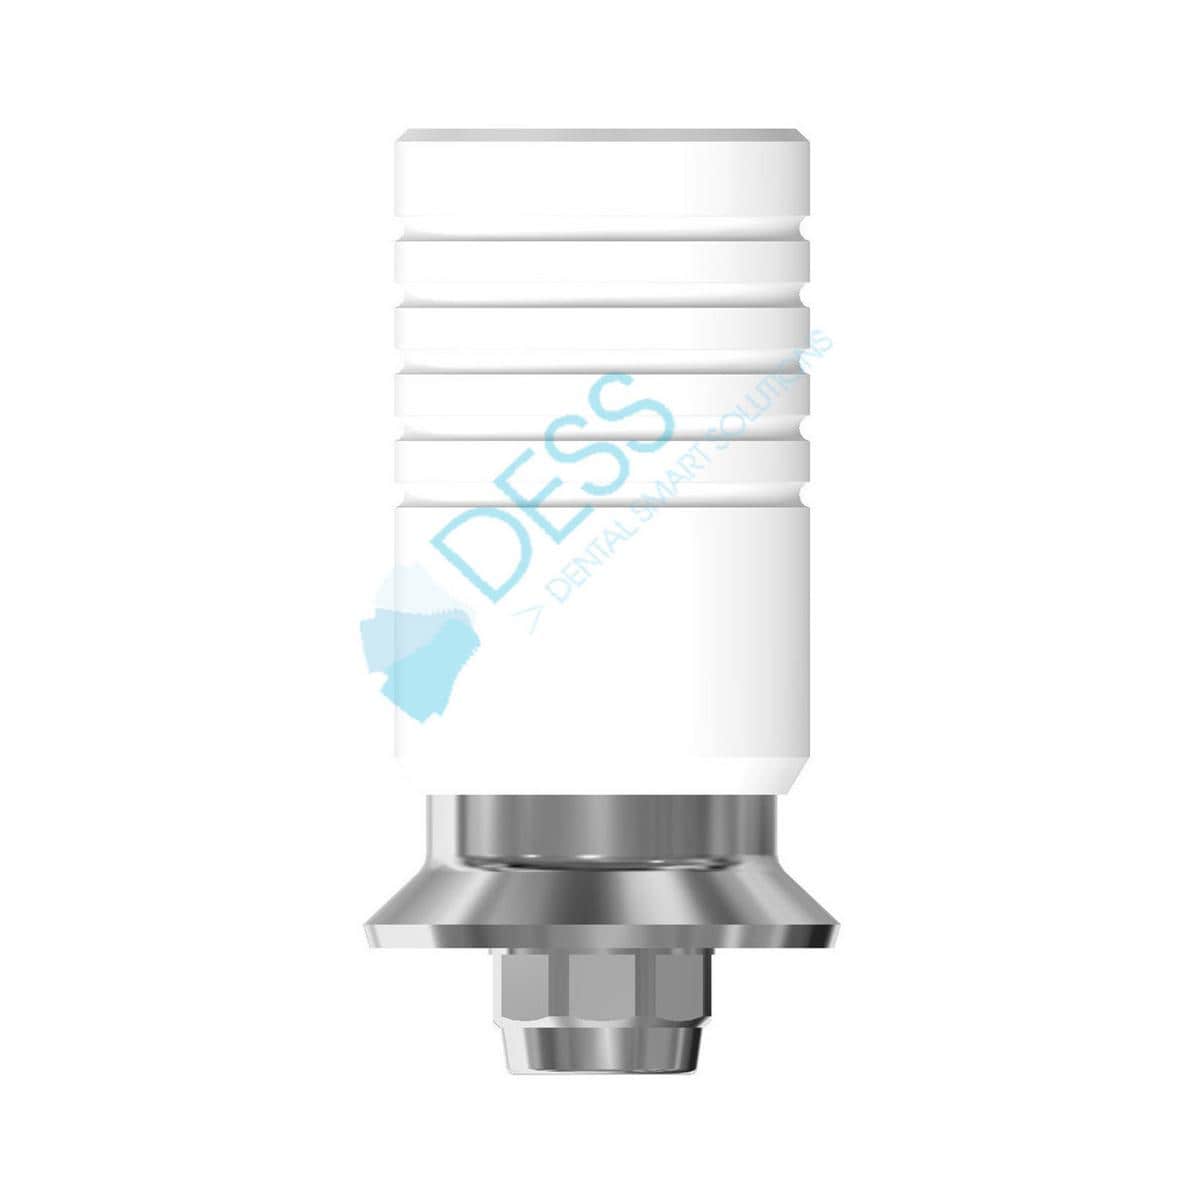 Kobalt-Chrom-Base auf Implantat - kompatibel mit Straumann® - WN Ø 6,5 mm, mit Rotationsschutz